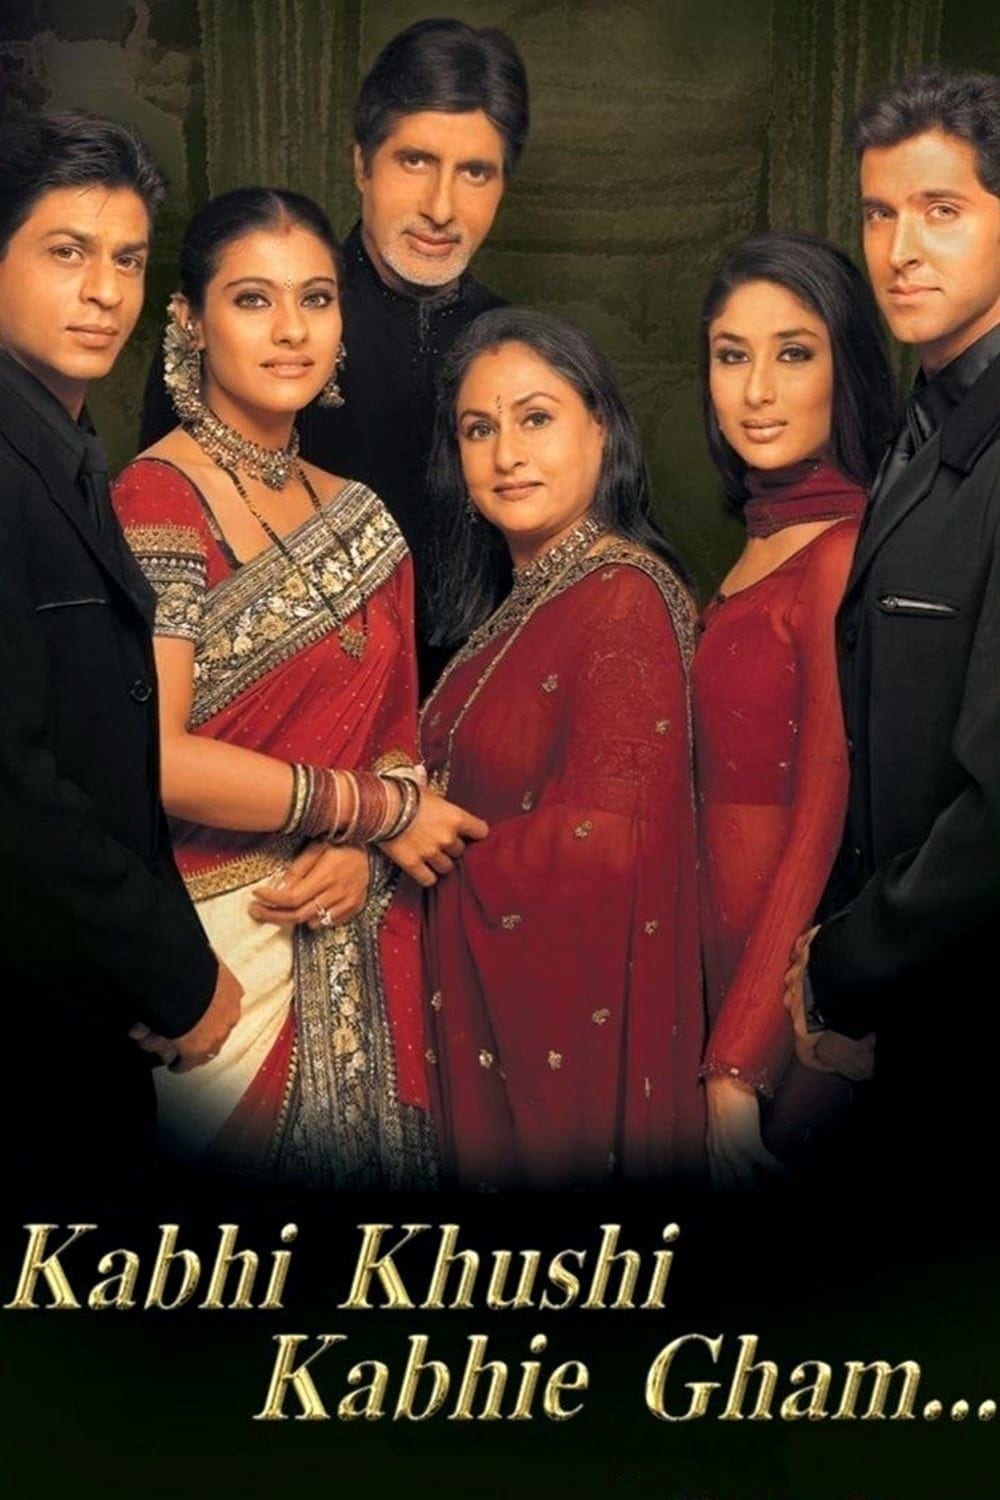 Poster for the movie "Kabhi Khushi Kabhie Gham"